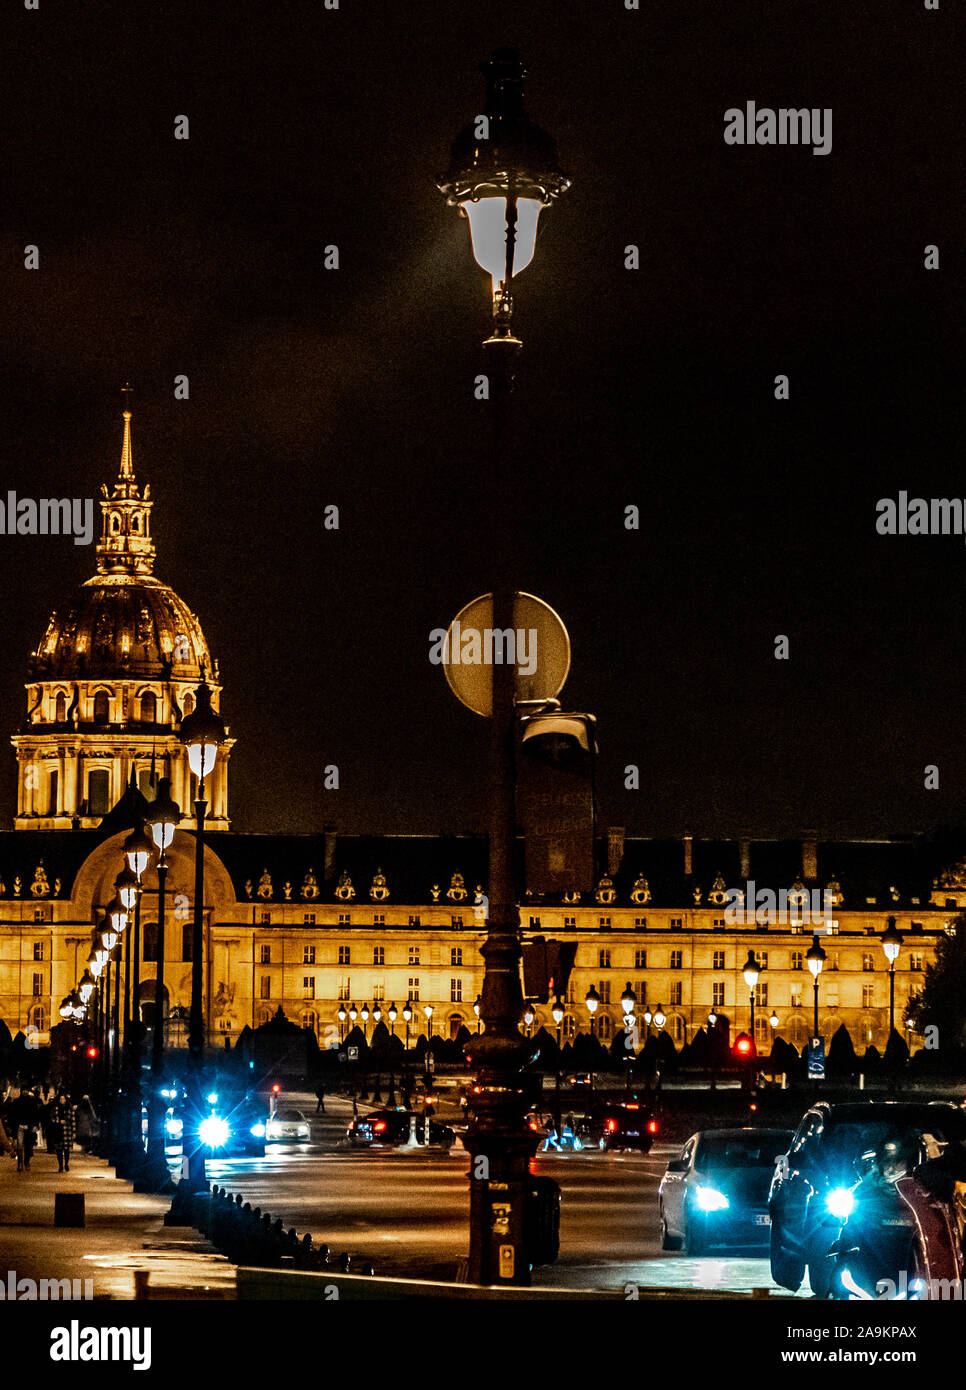 L'architecture parisienne, bâtiments célèbres et le mode de vie Banque D'Images